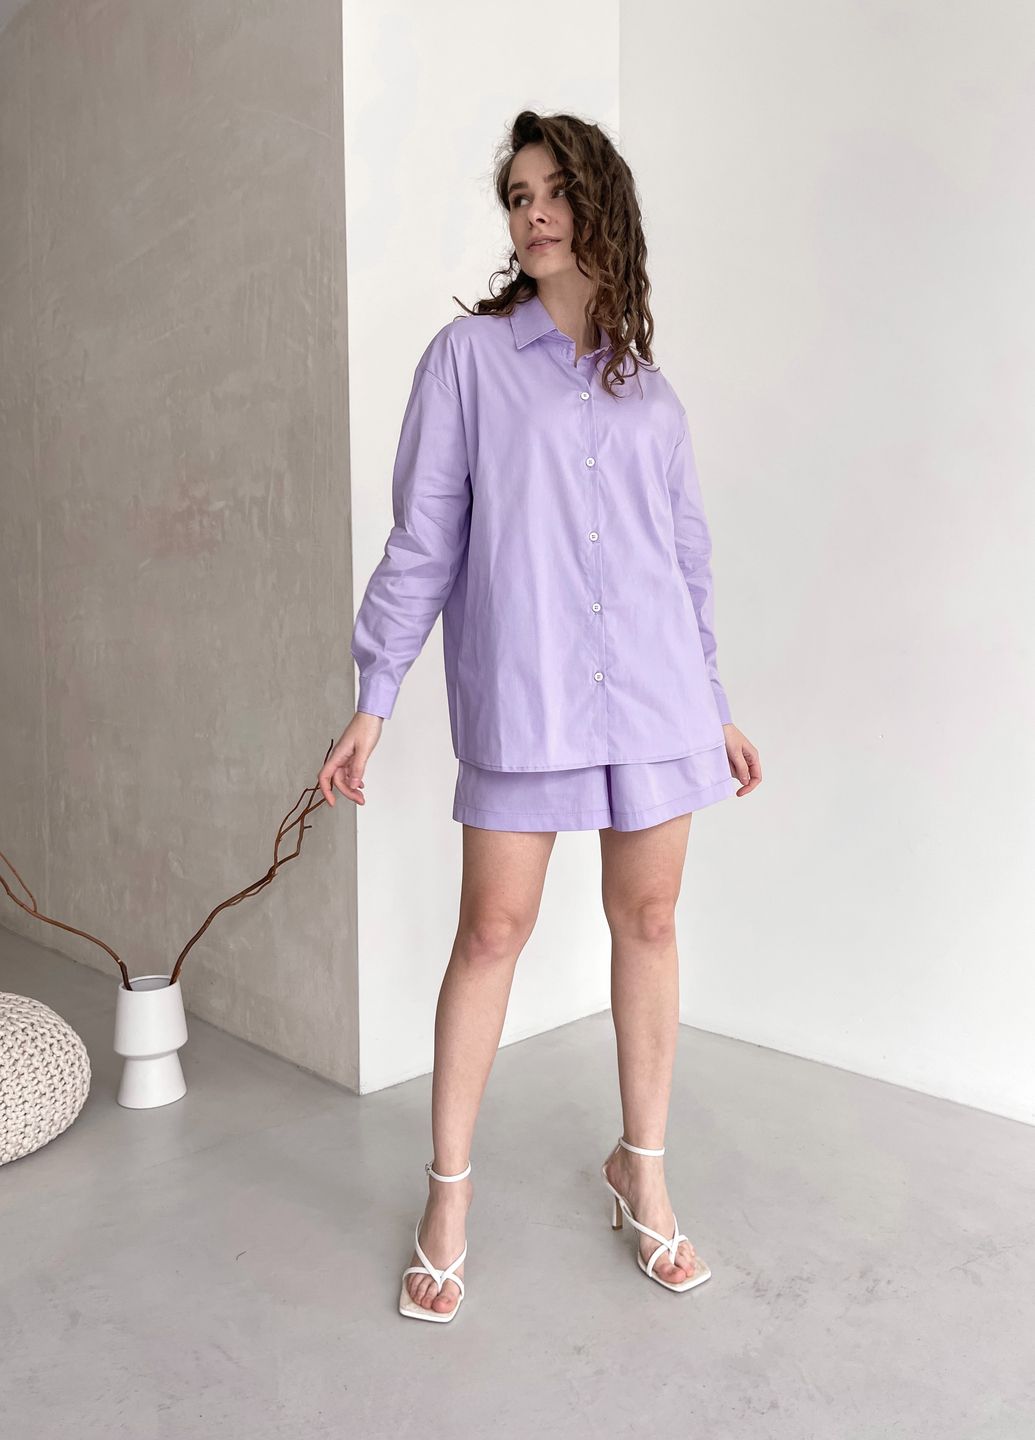 Купить Классическая хлопковая рубашка женская Merlini Вена 200000203, размер 42-44 в интернет-магазине